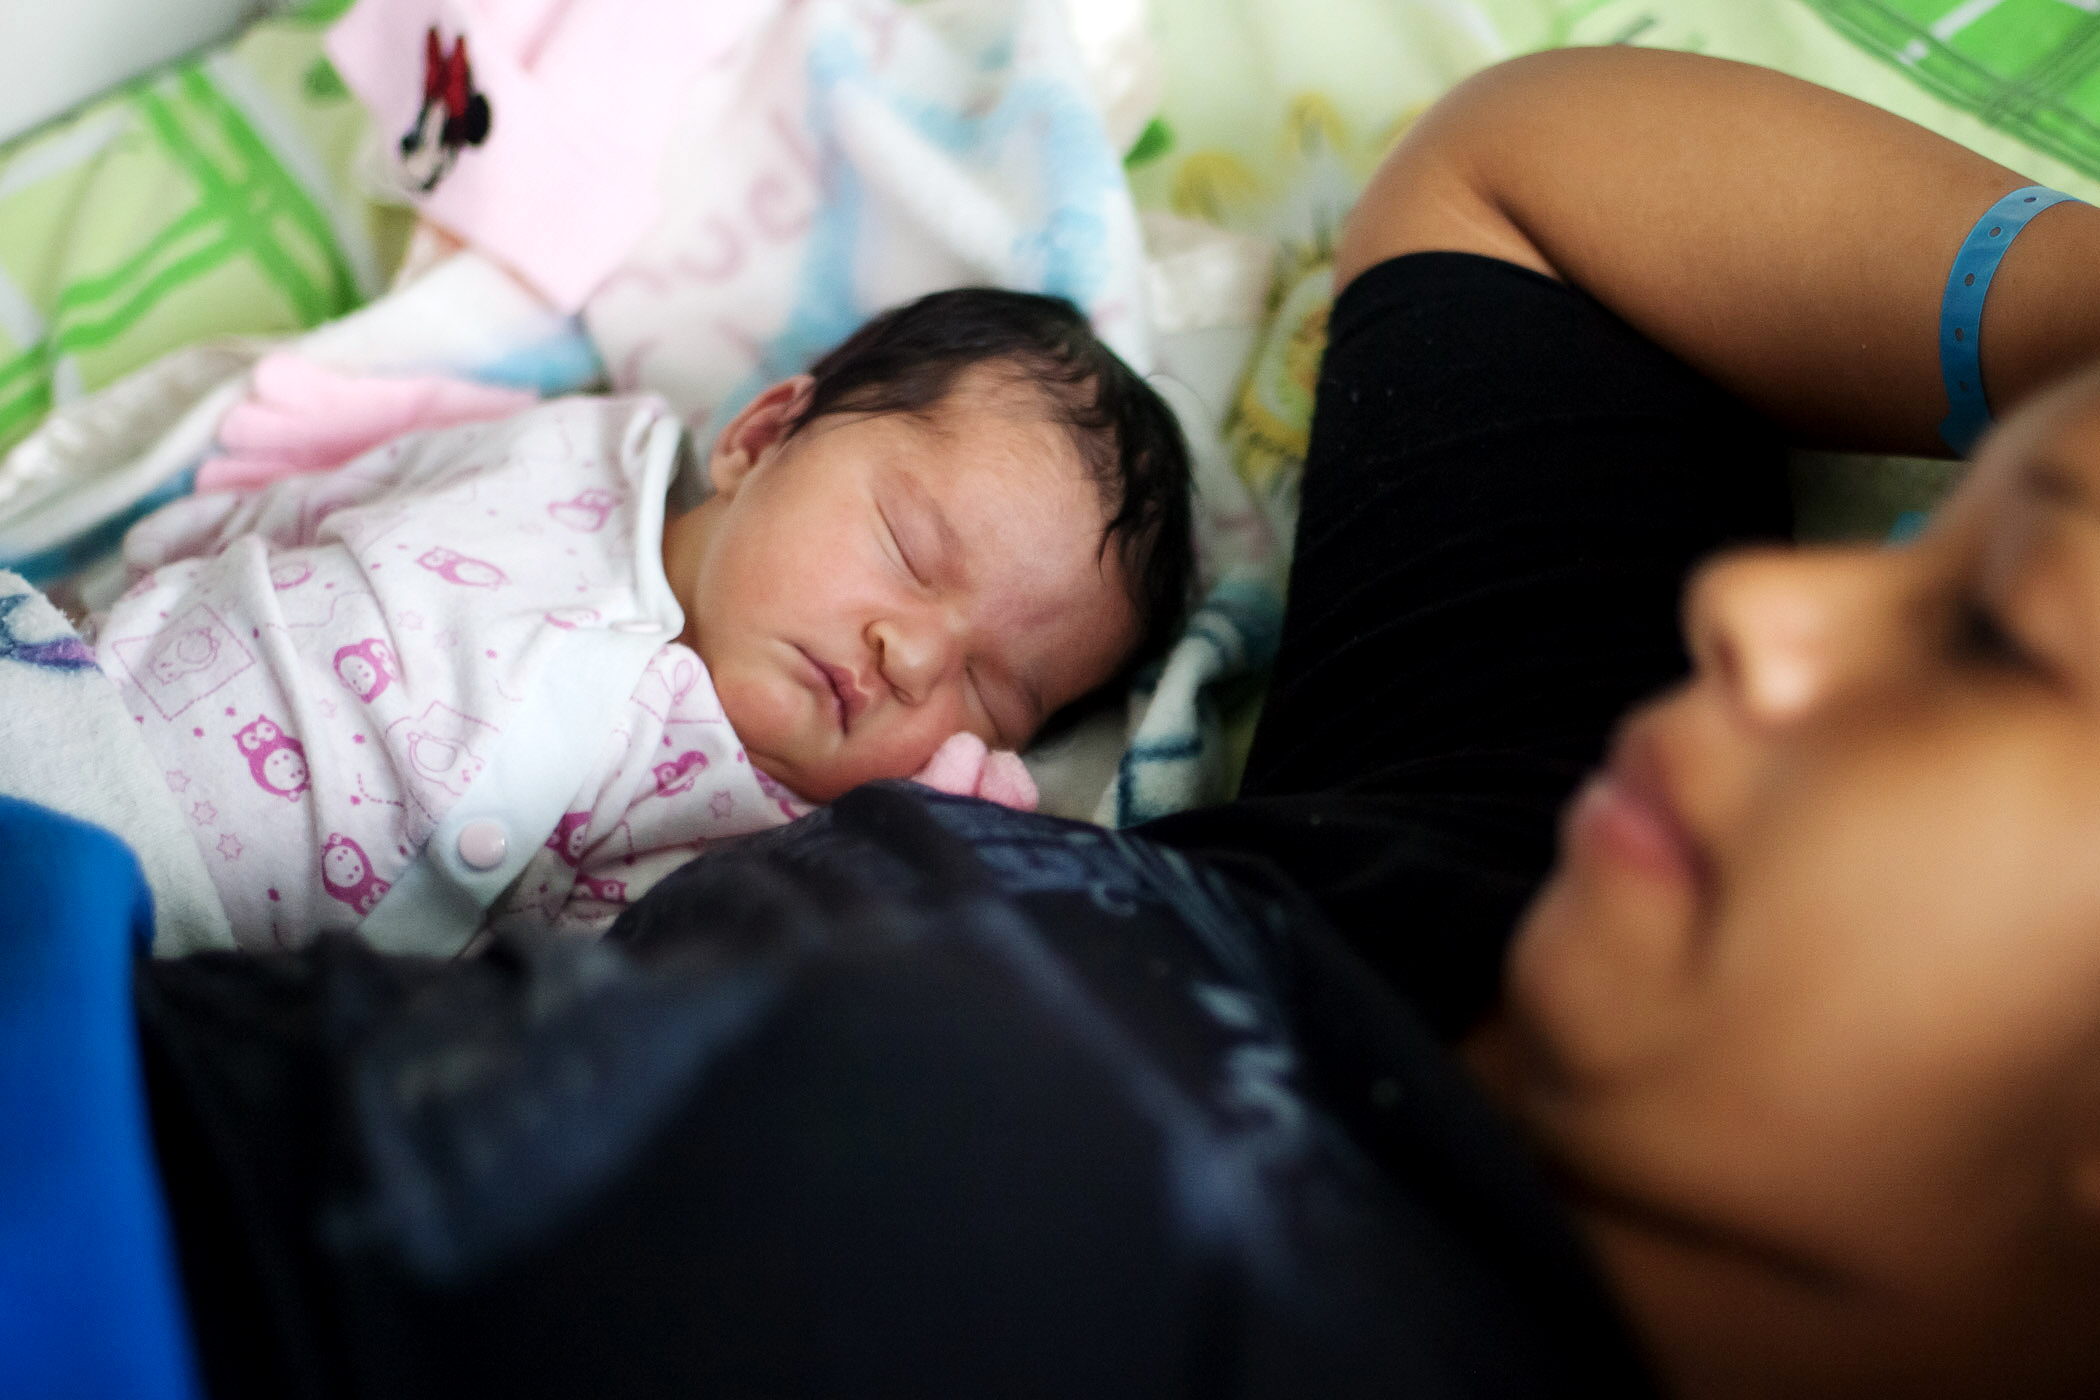  Alerta Narro sobre aumento de “madres-niñas” en el país